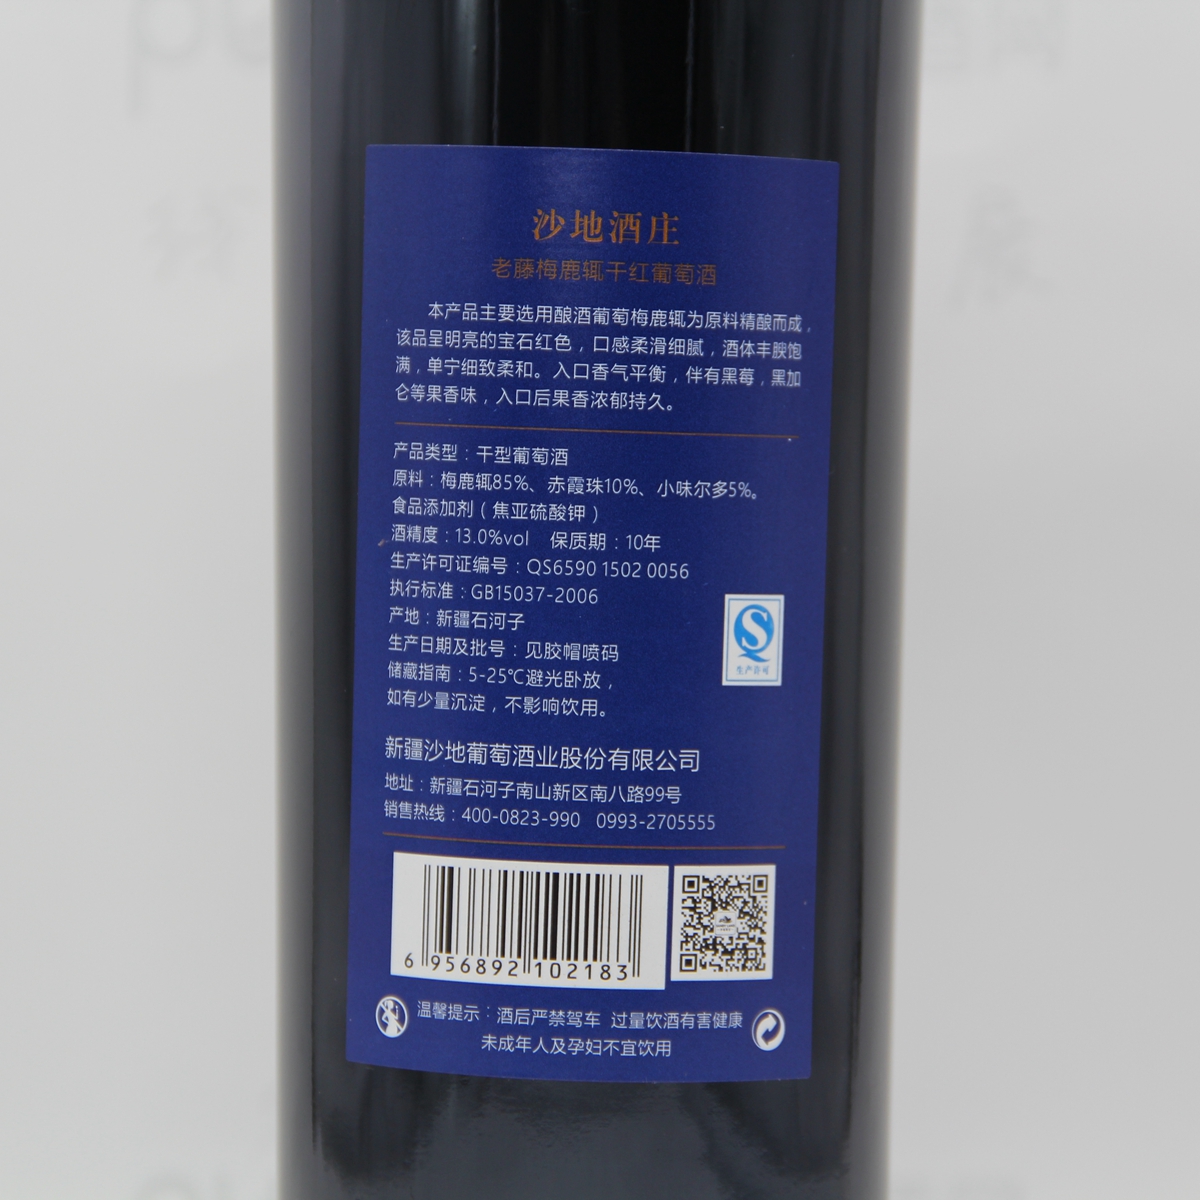 中国新疆产区沙地酒庄 梅鹿辄merlot老藤干红葡萄酒